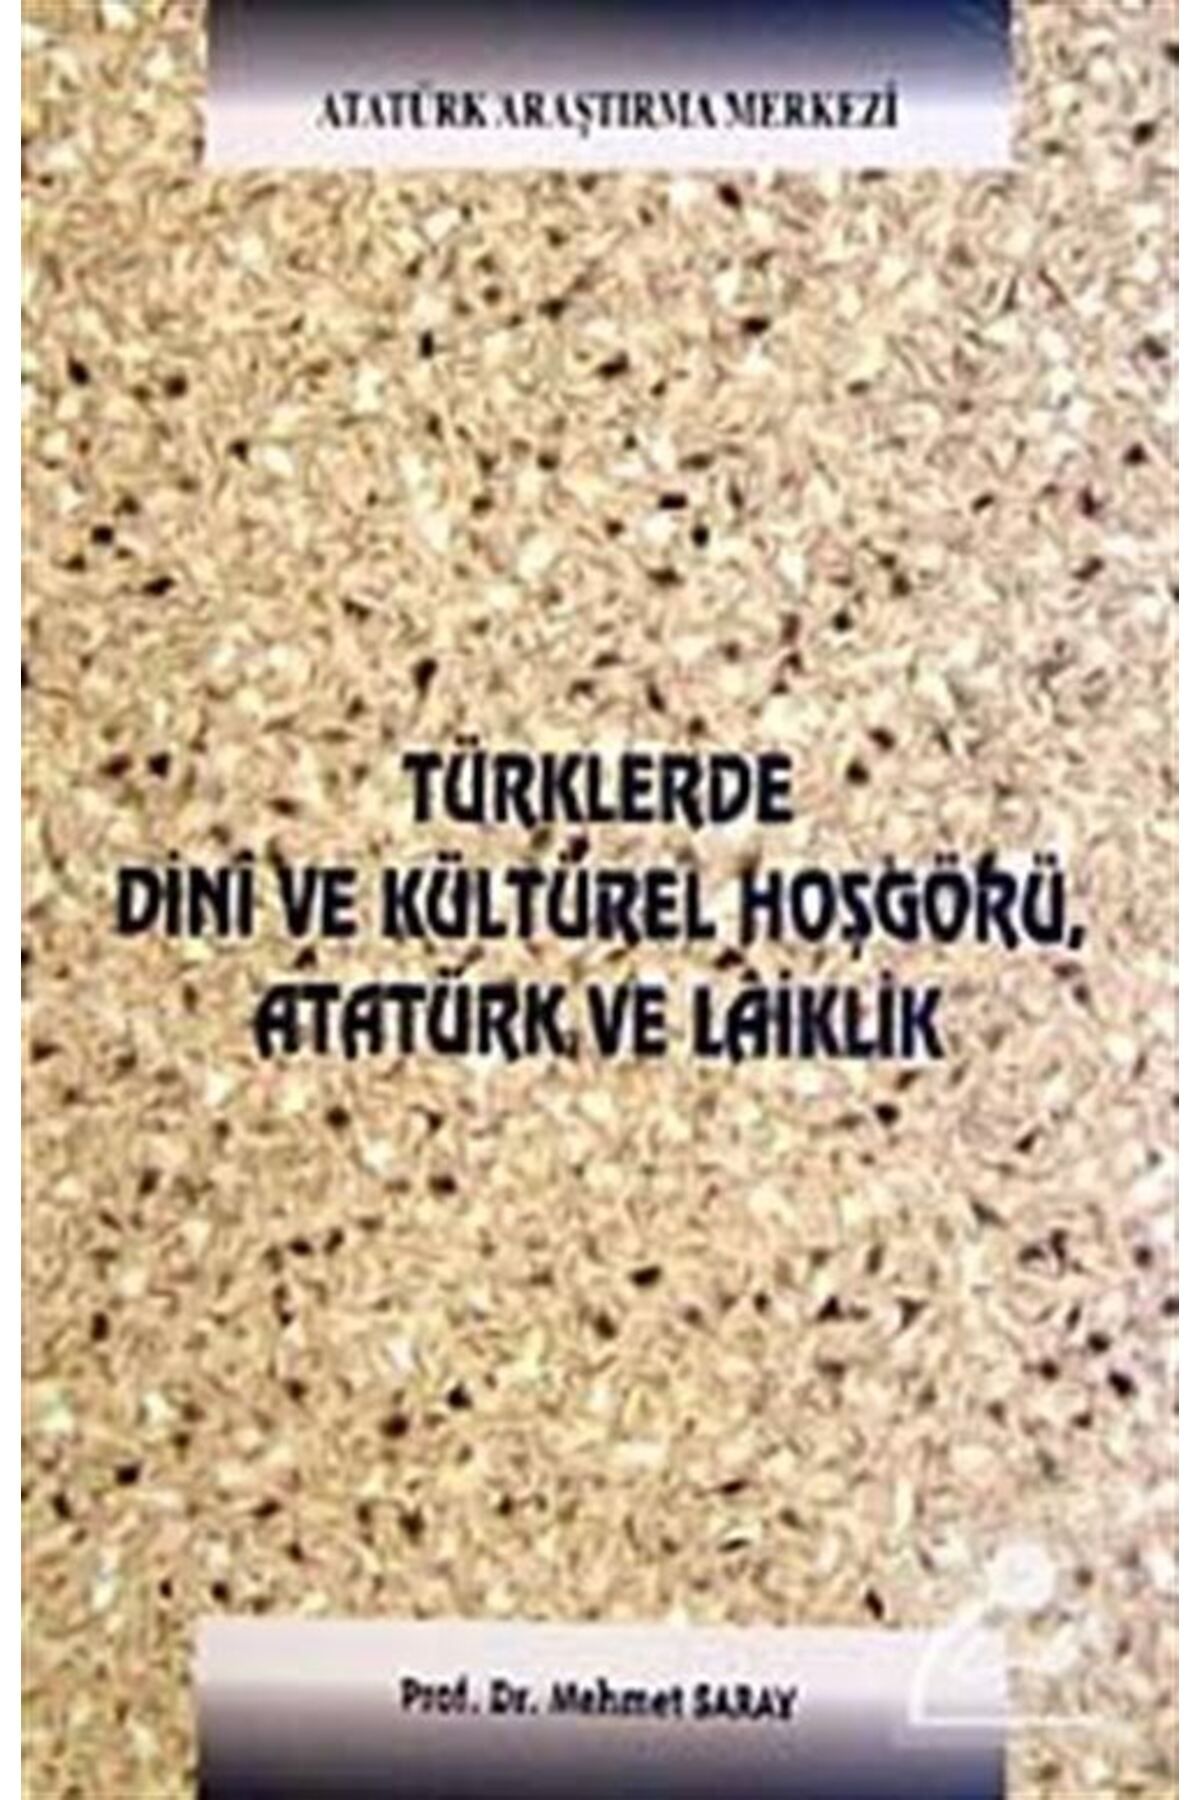 Atatürk Araştırma Merkezi Türklerde Dini Ve Kültürel Hoşgörü Atatürk Ve Laiklik